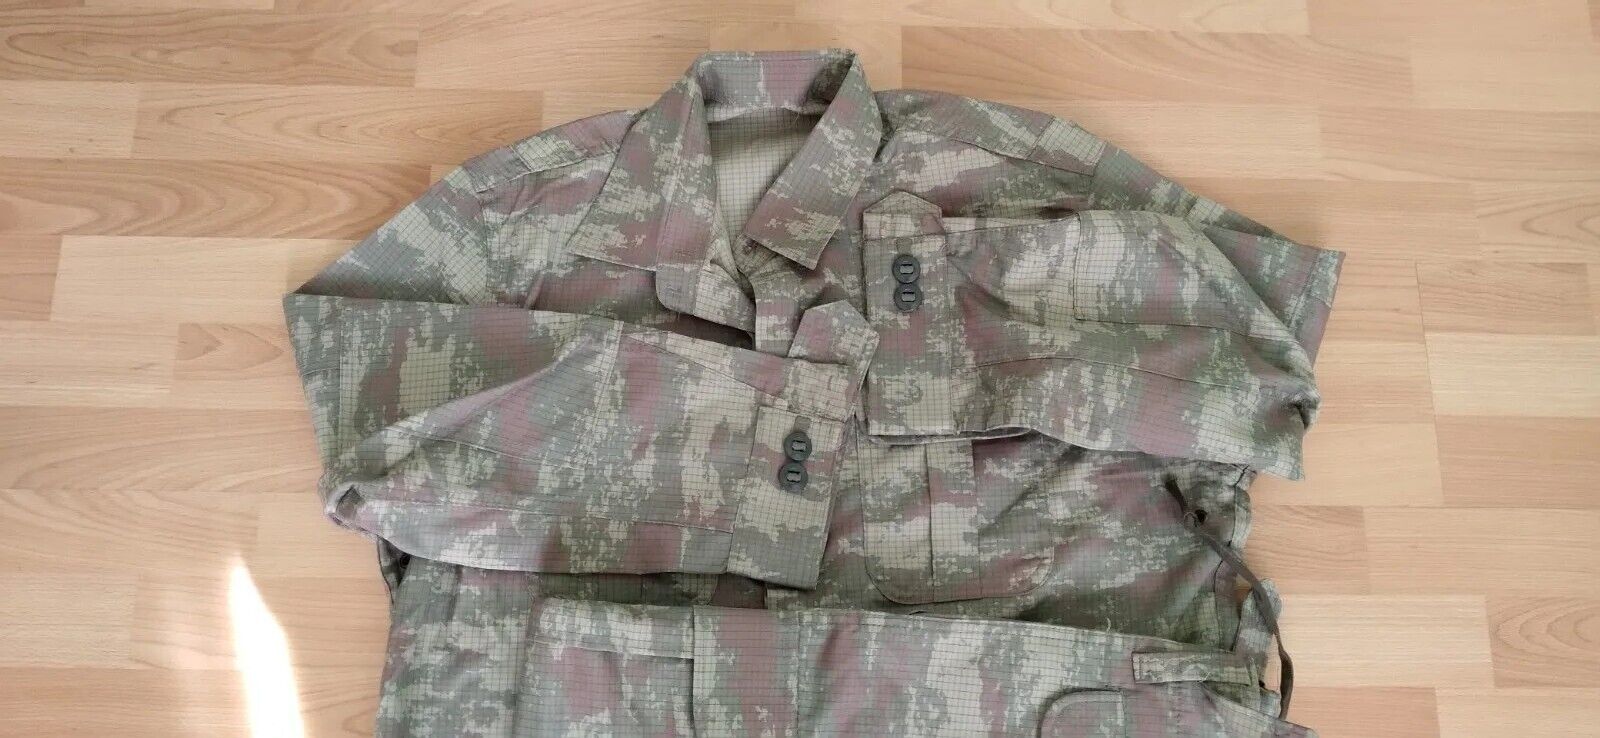 Turkish  Army 2010  genuine digitlal  camouflage uniform set camo bdu 3 XXL